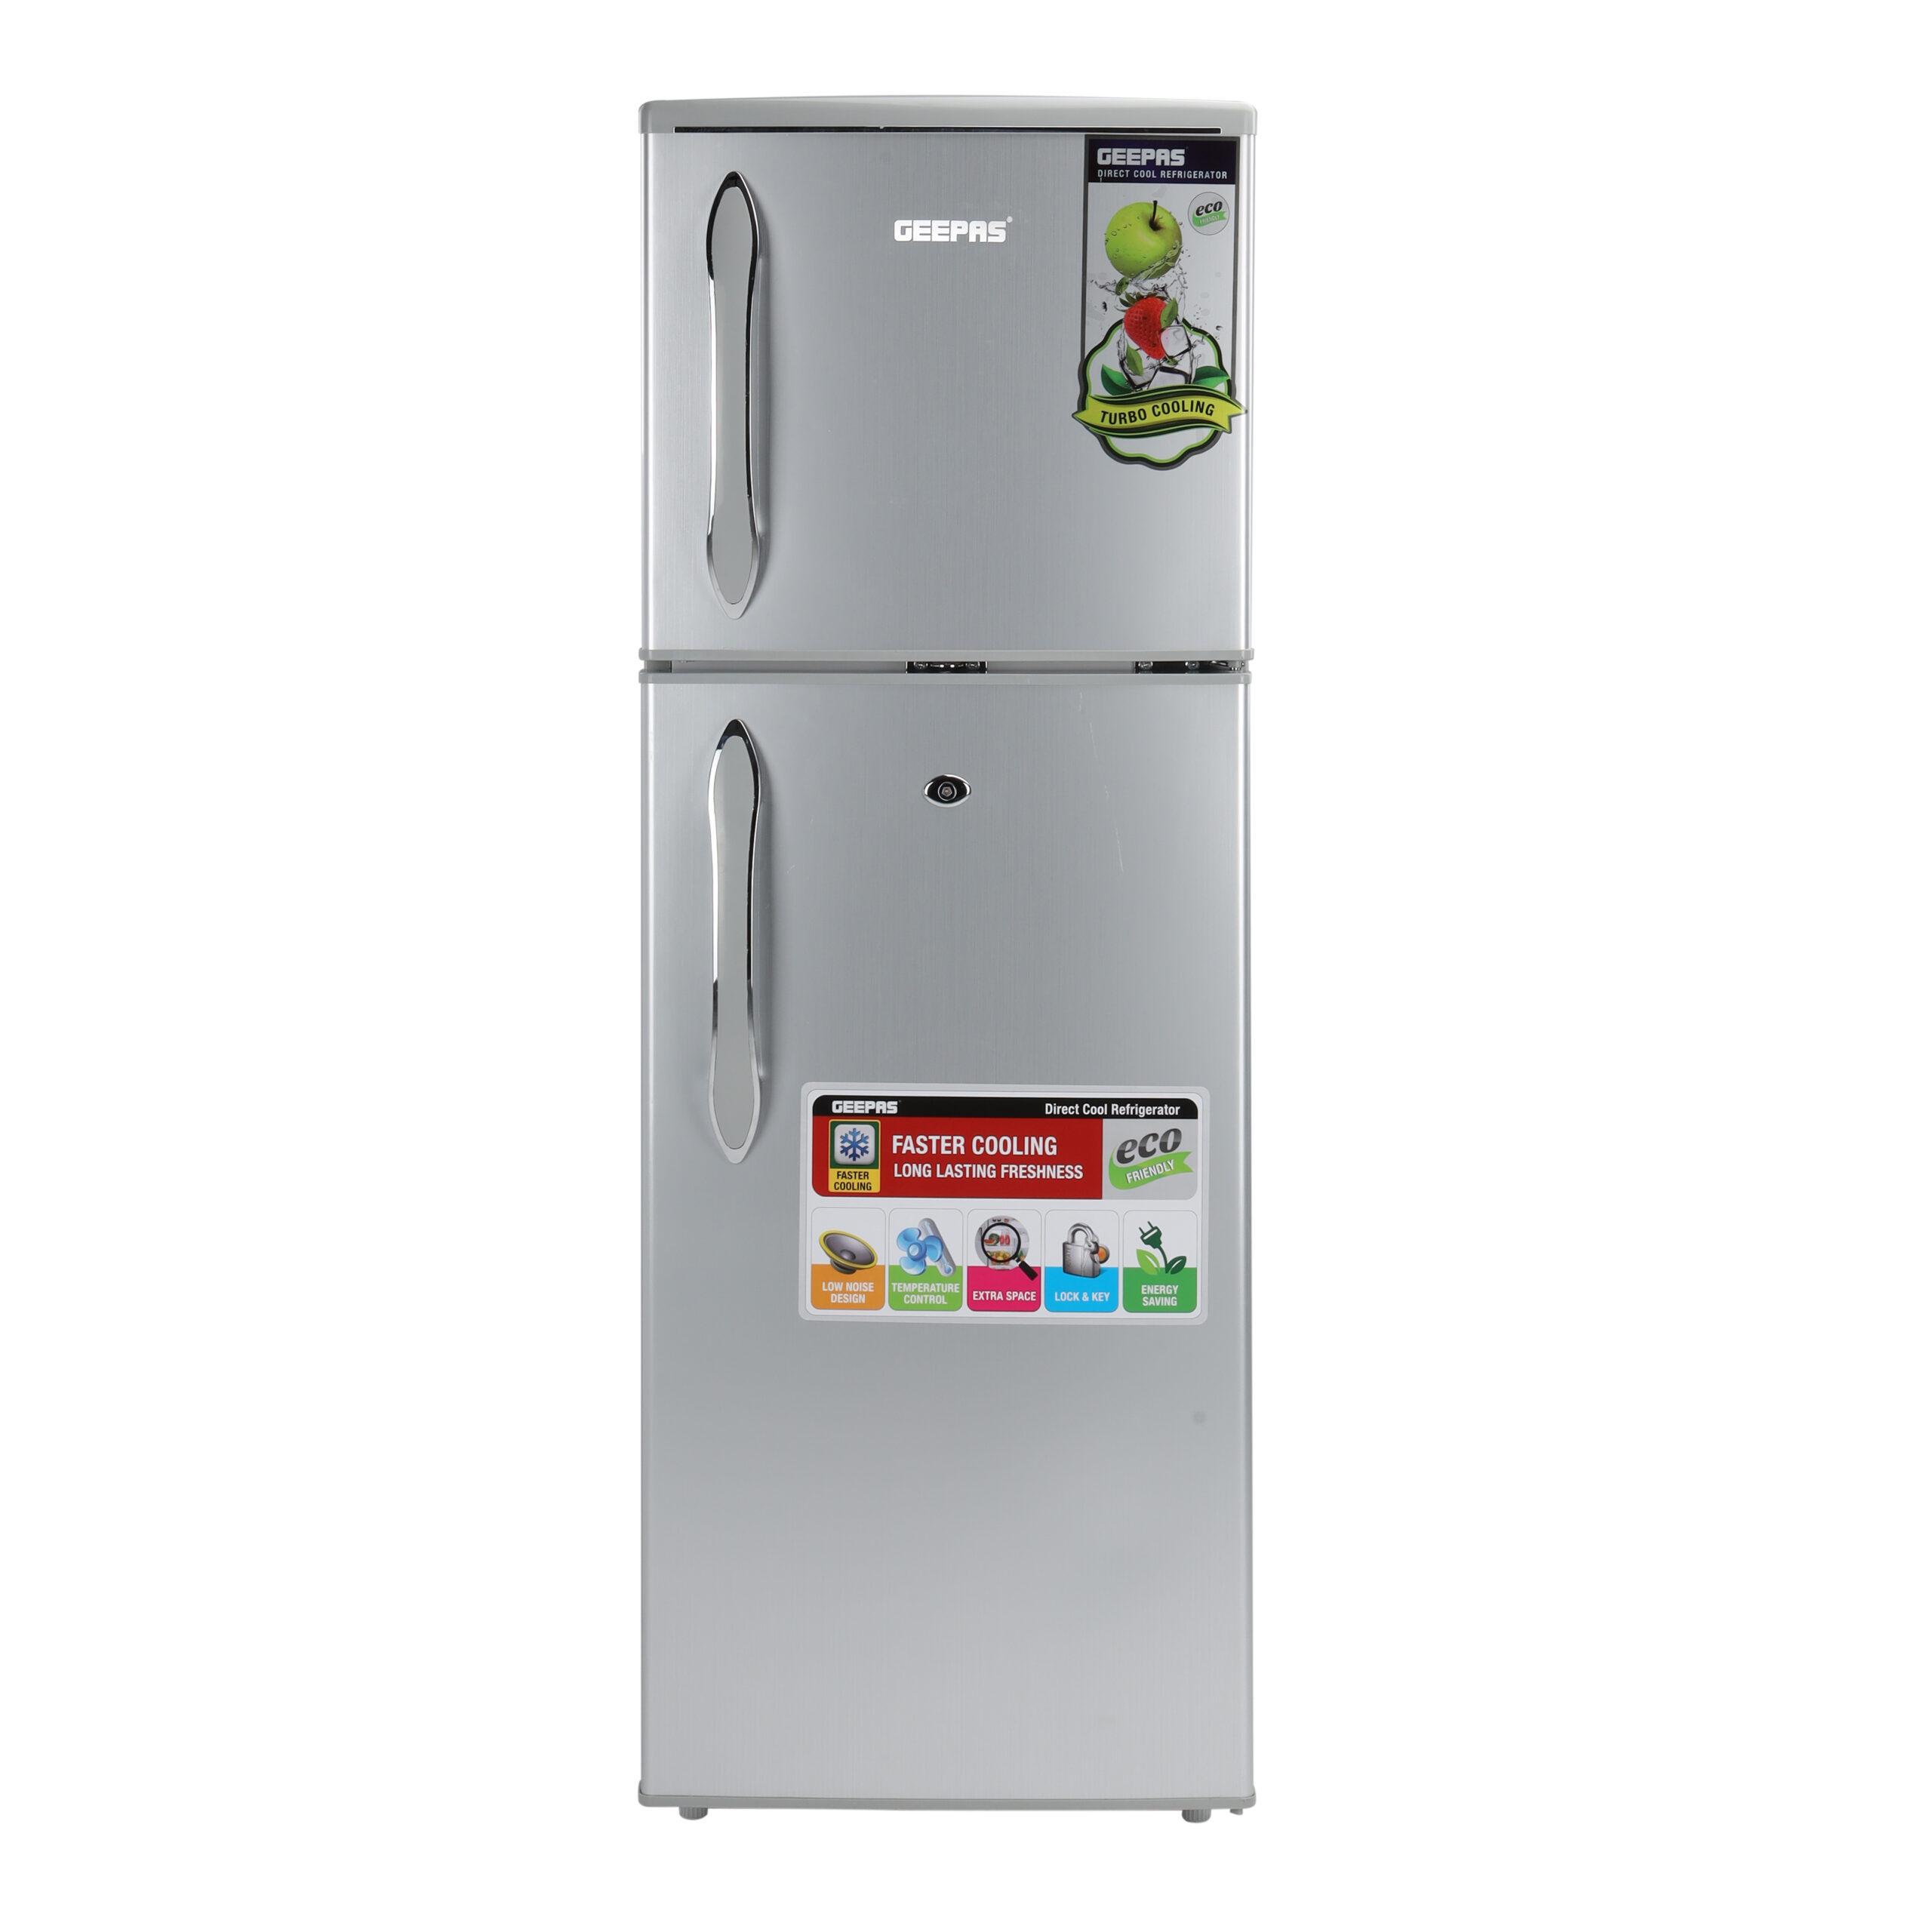 ثلاجة جيباس بابين مع خاصية التبريد السريع Geepas 180L Double Door Refrigerator